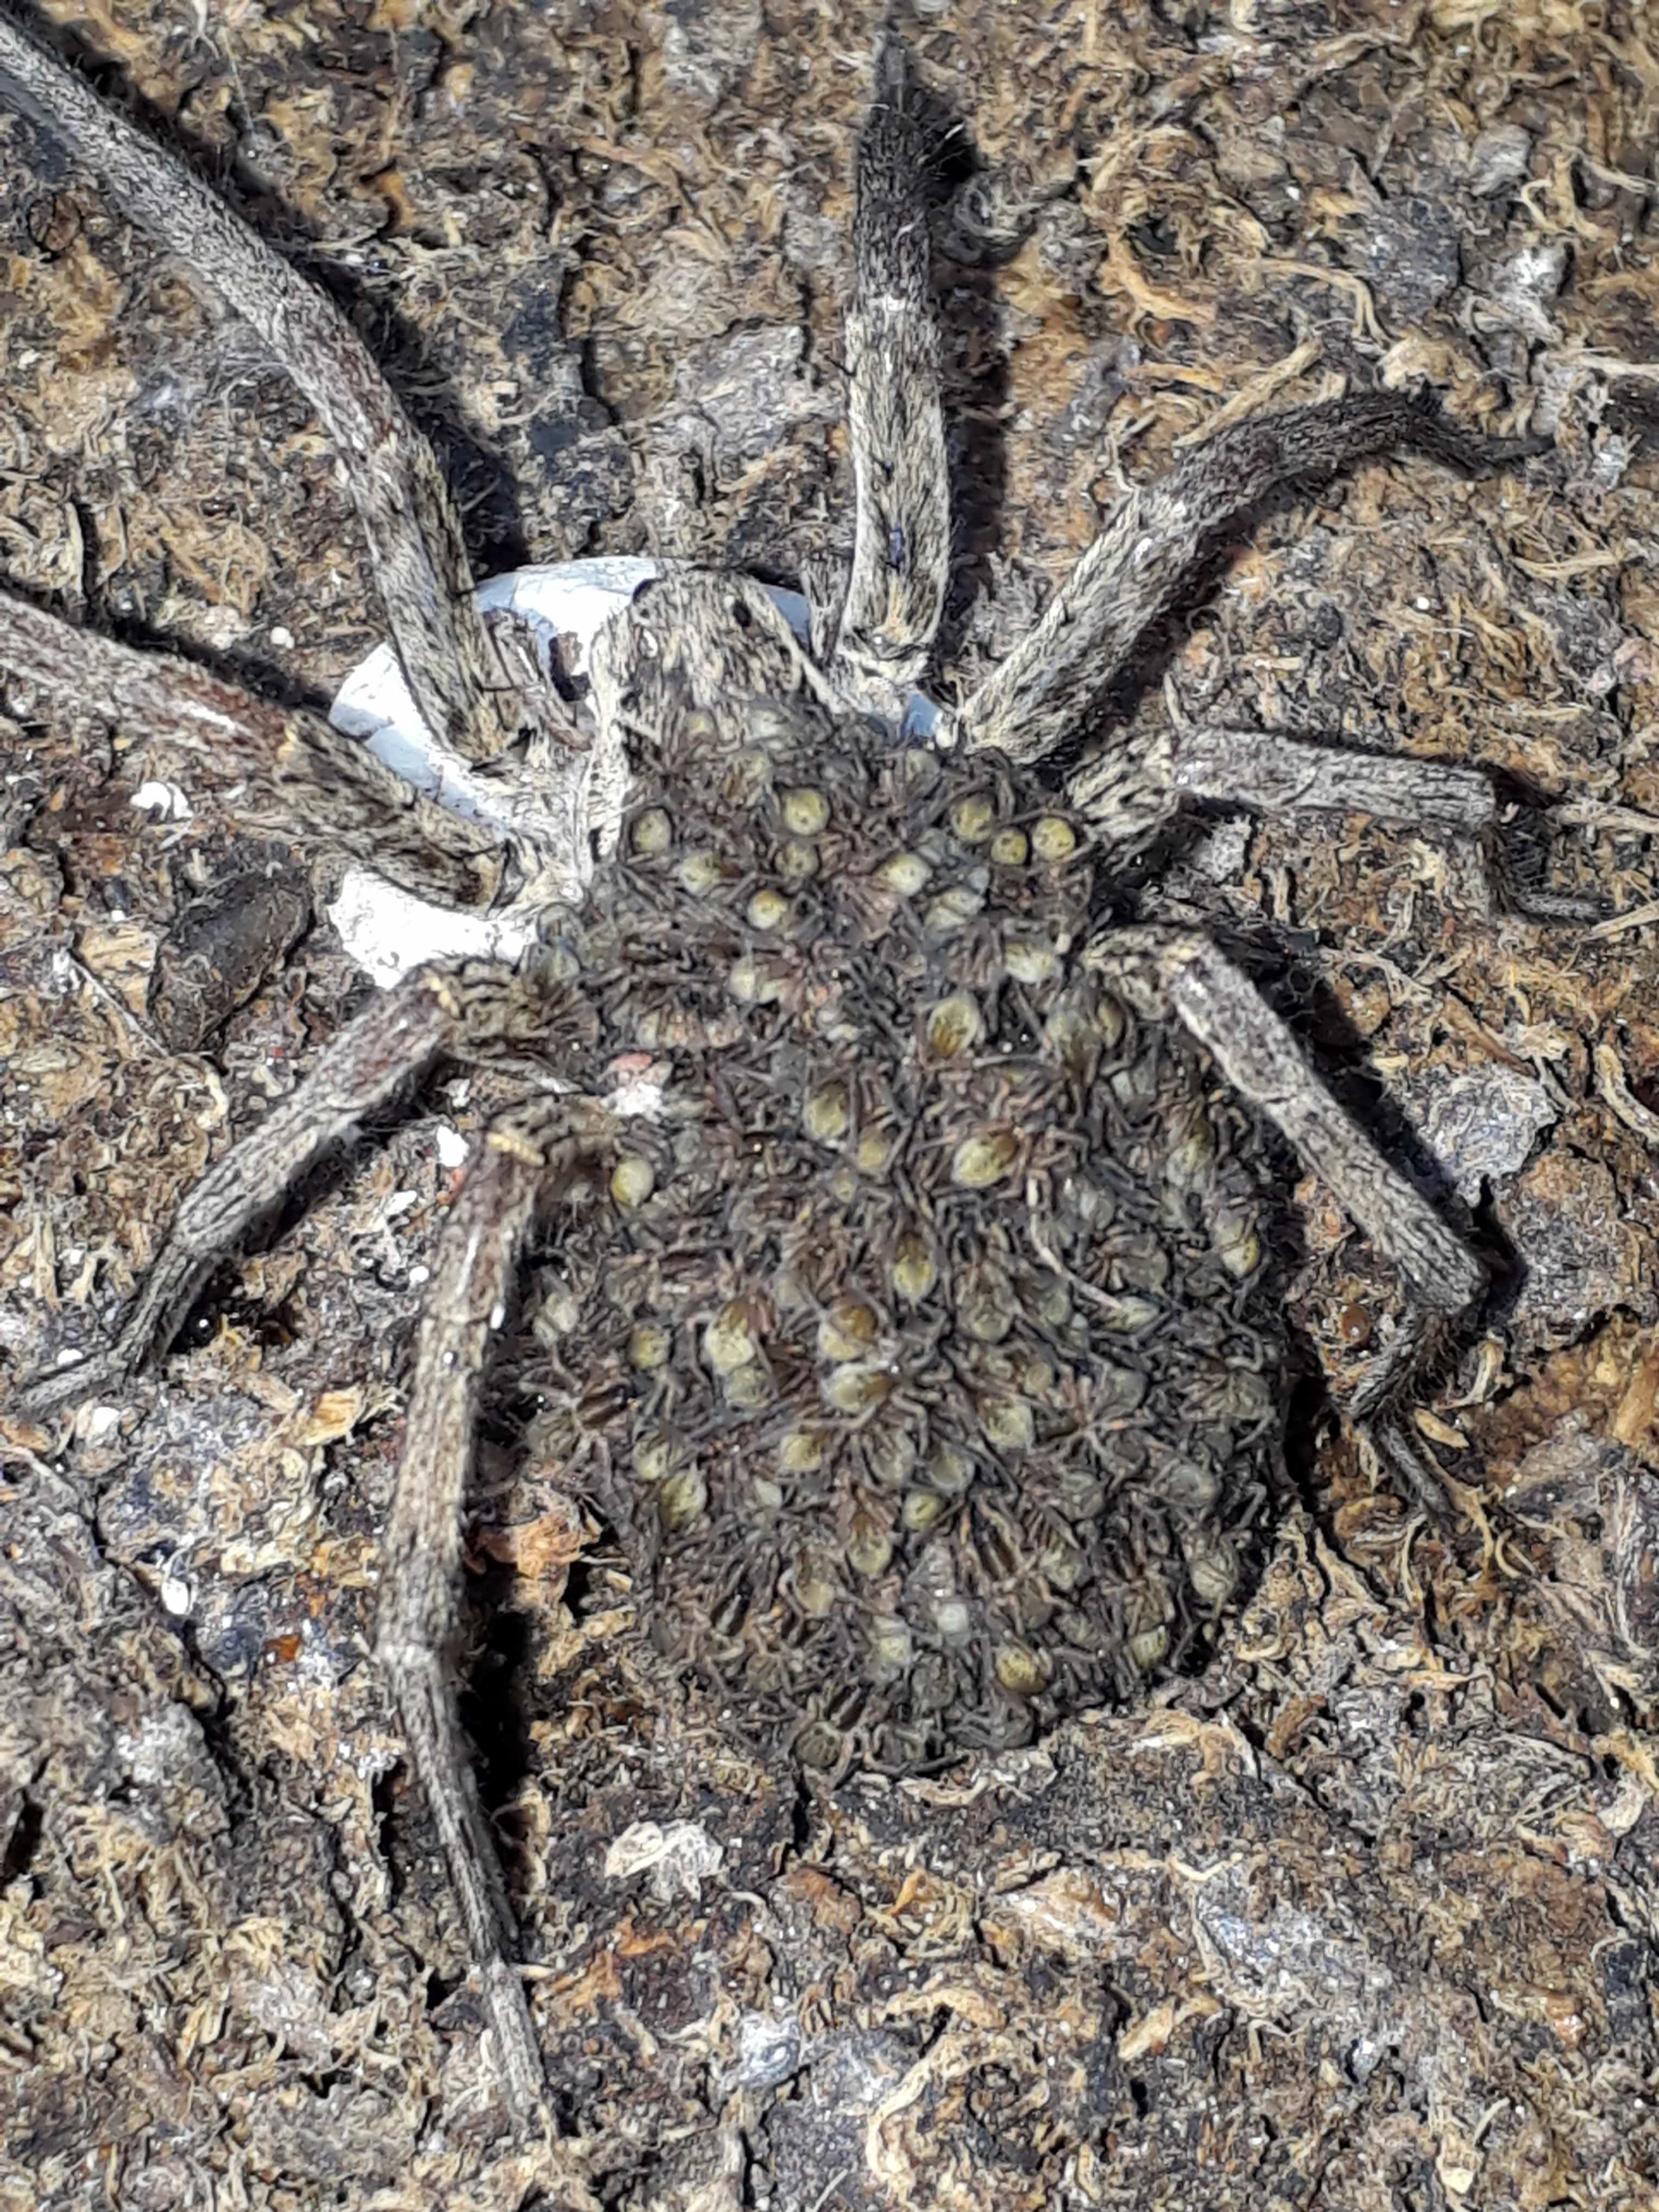 Picture of Hogna radiata - Female - Dorsal,Egg sacs,Spiderlings